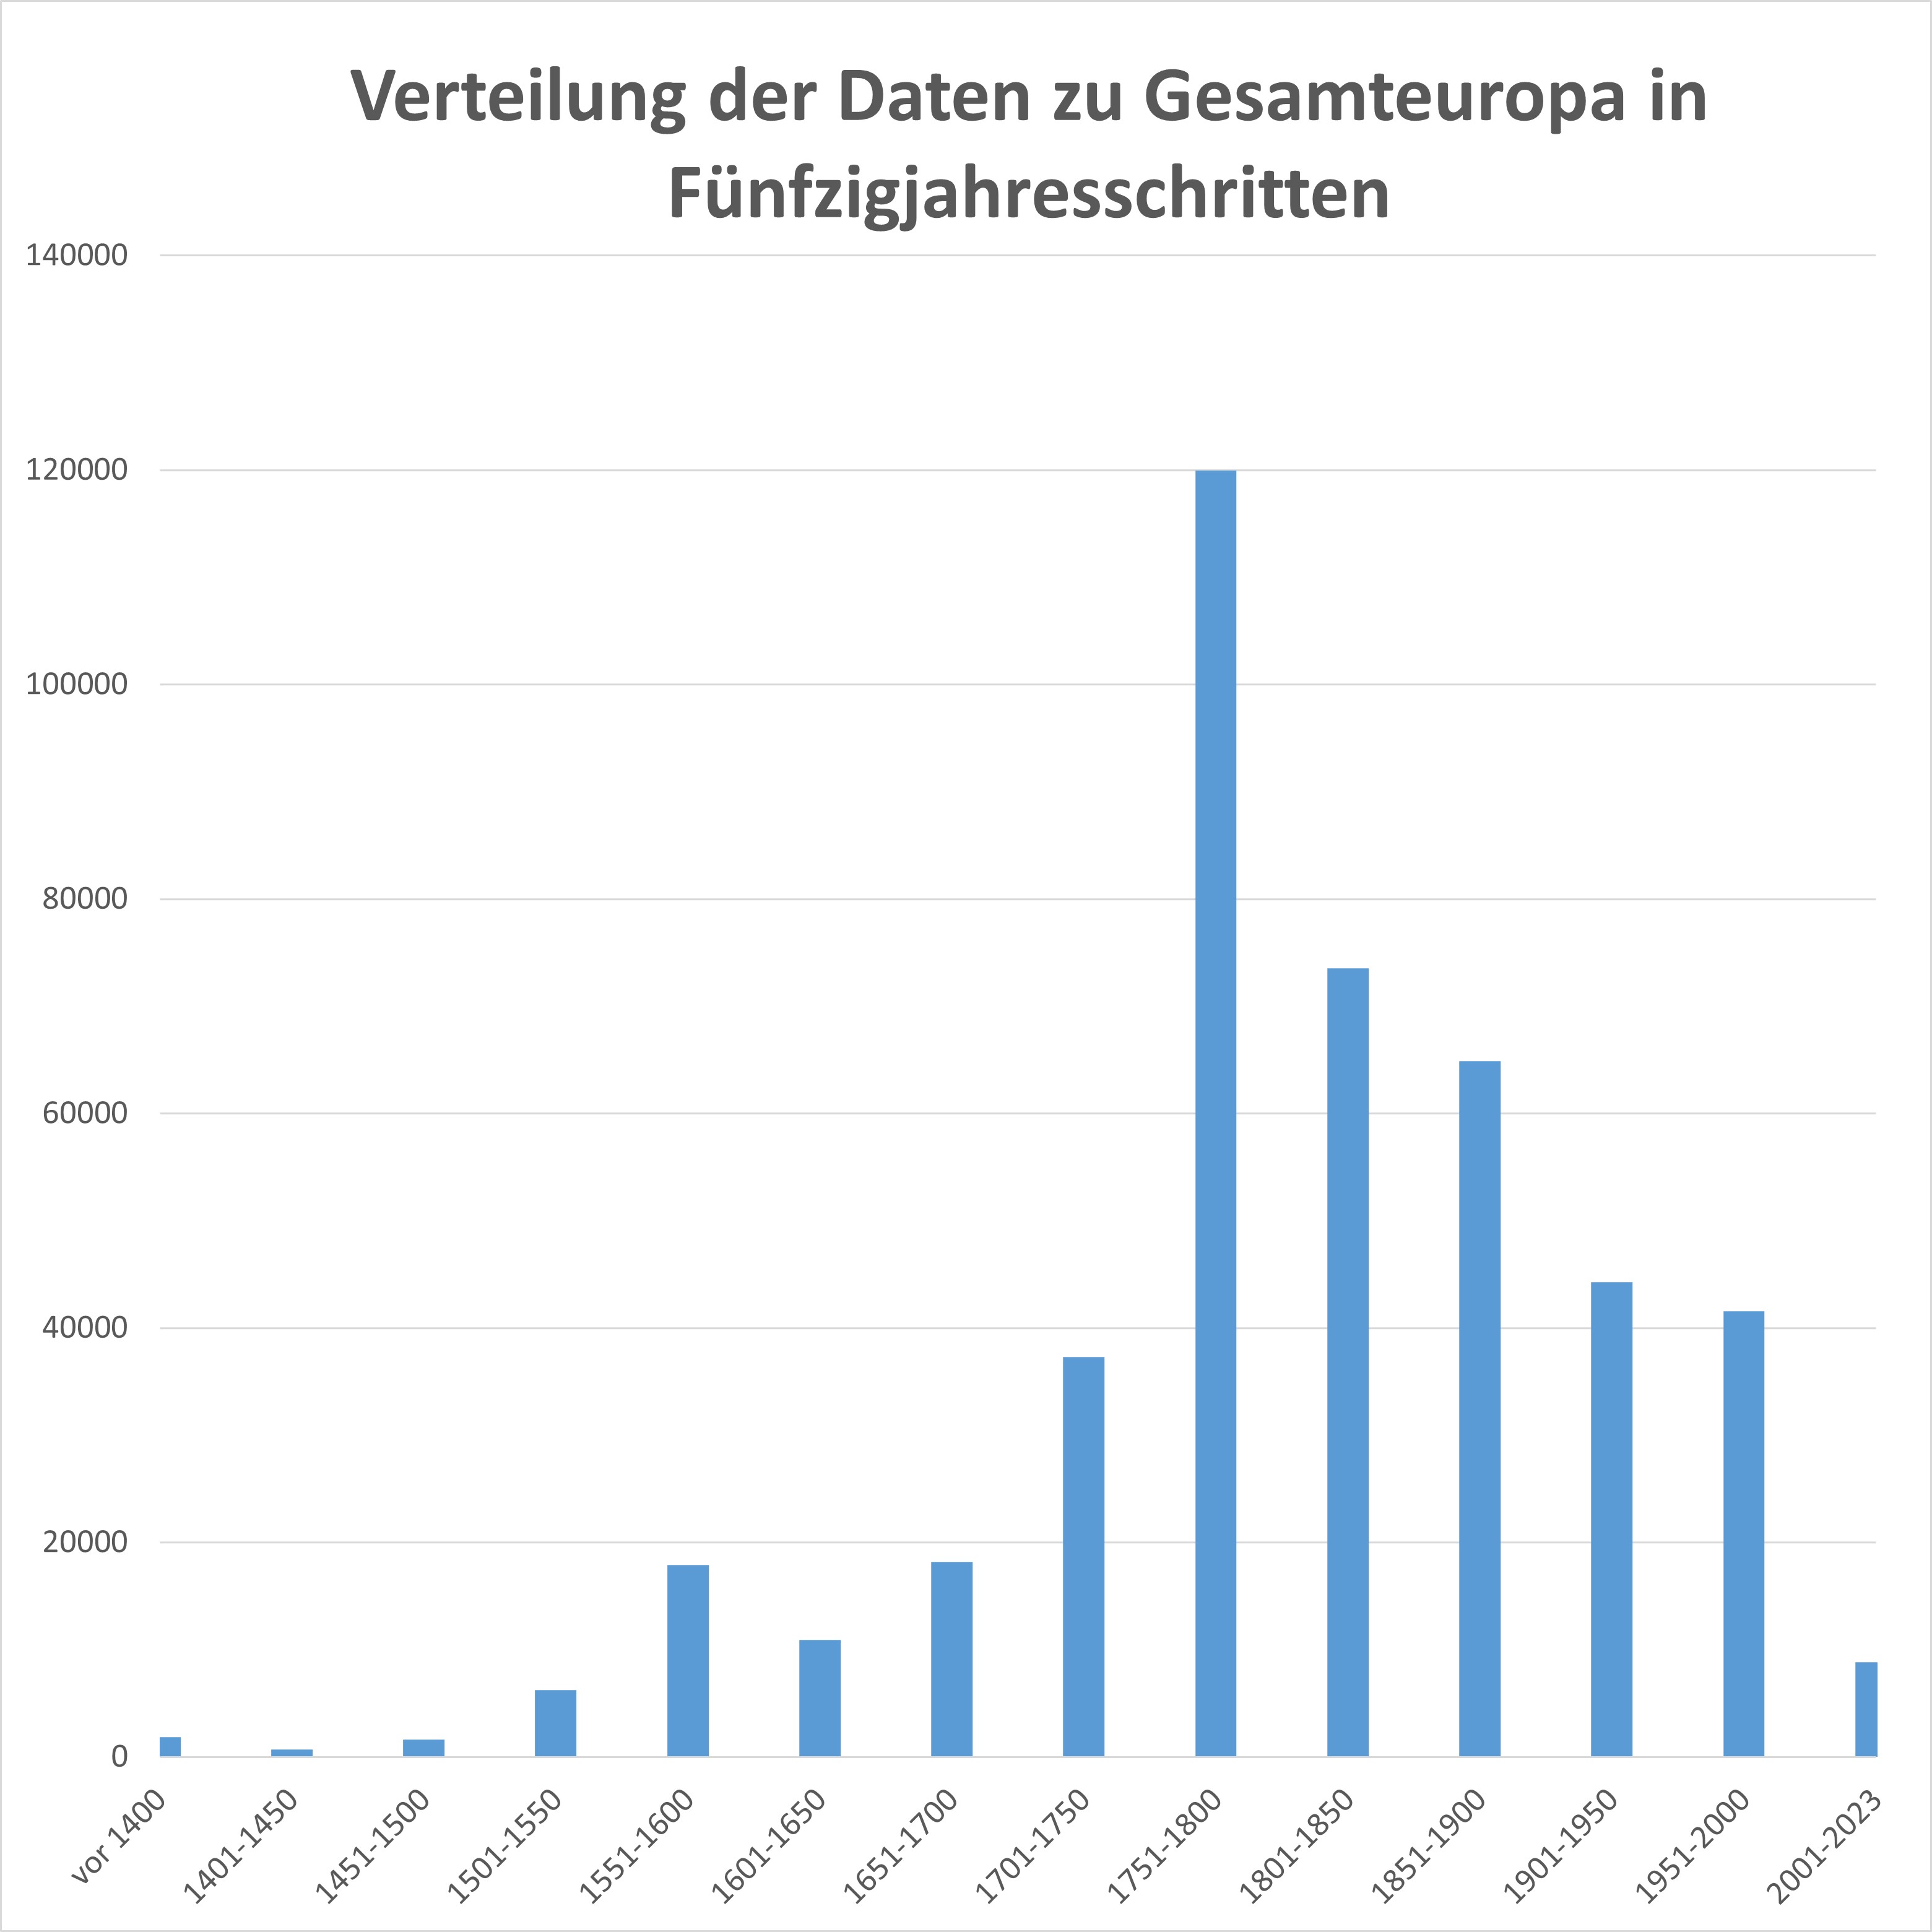 Verteilung der Daten zu Gesamteuropa (735-2023) in Fünfzigjahresschritten